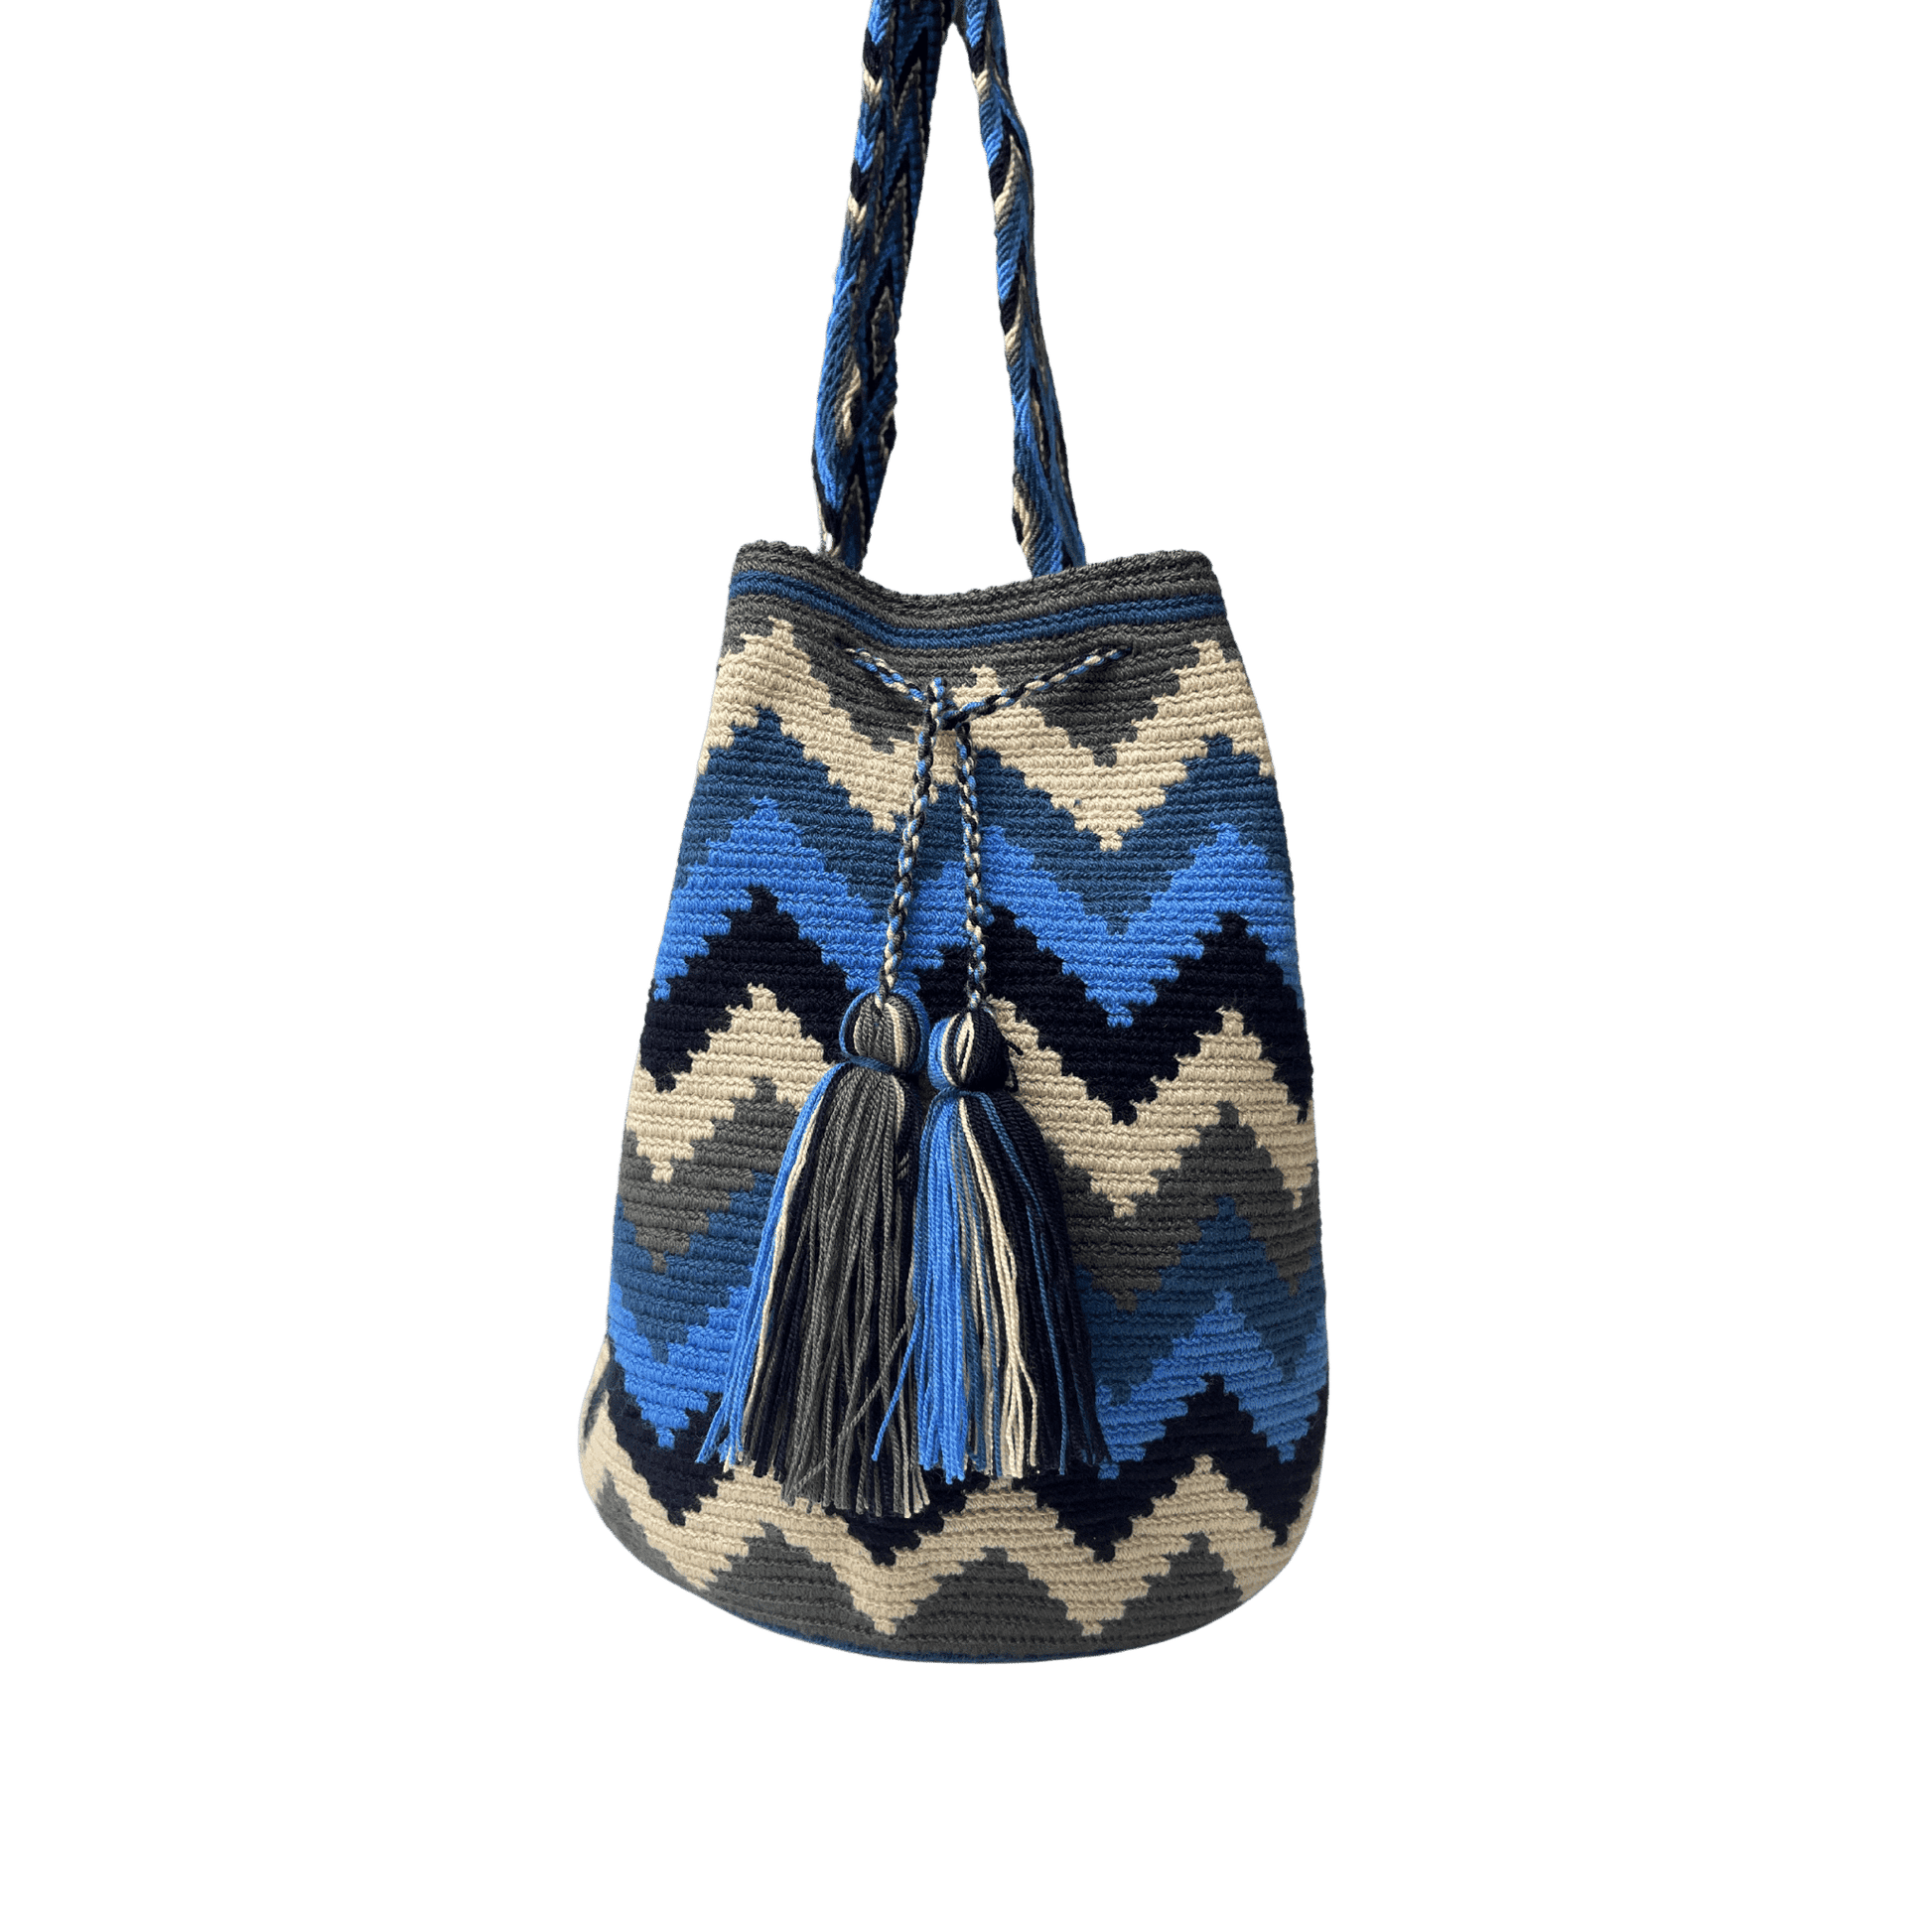 Mochila wayuu para mujer en colores azules, beige y gris